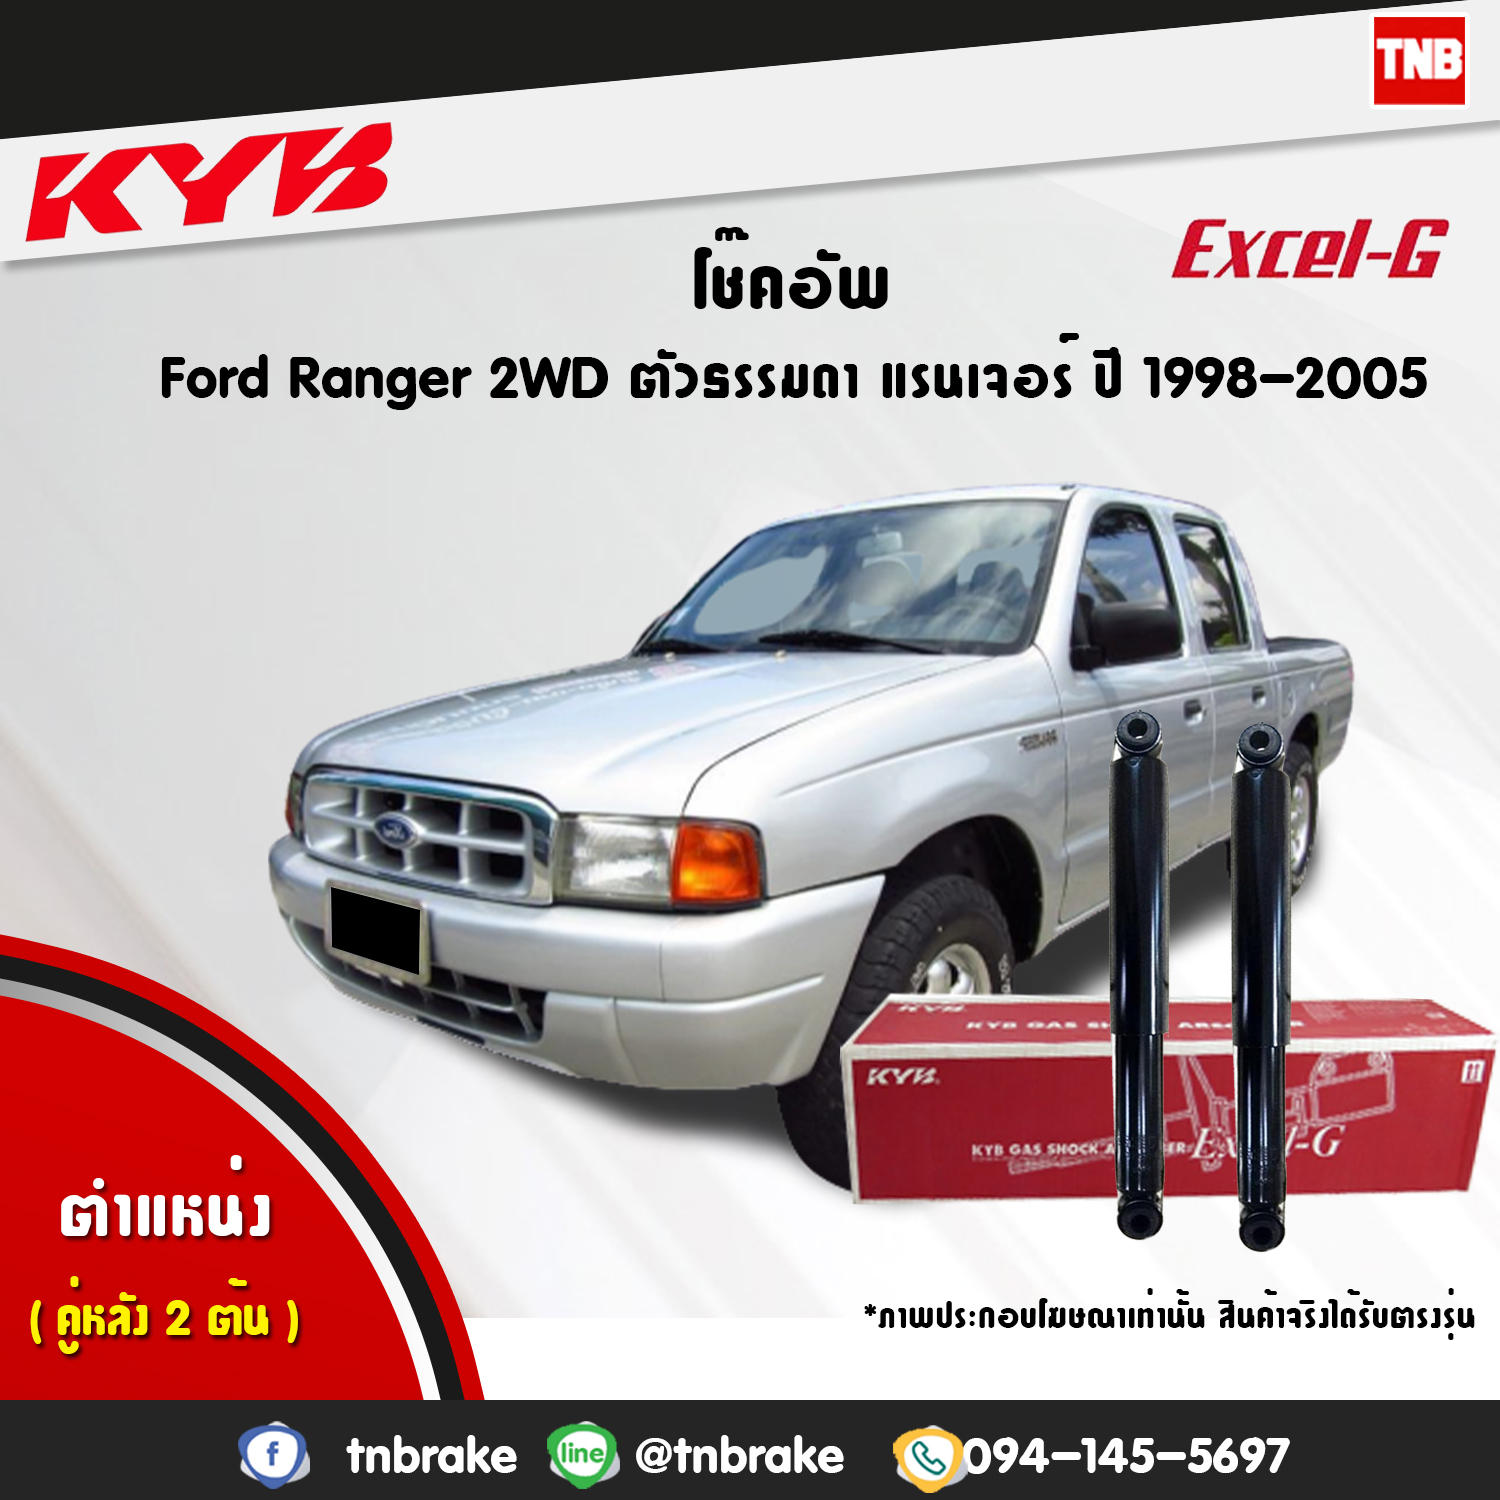 โช๊คอัพ หลัง ford ranger 2wd ฟอร์ด แรนเจอร์ 4x2 ตัวธรรมดา ตอนเดียว ปี 1998-2005 kayaba kyb excel-g คายาบ้า เอ็กซ์เซลจี